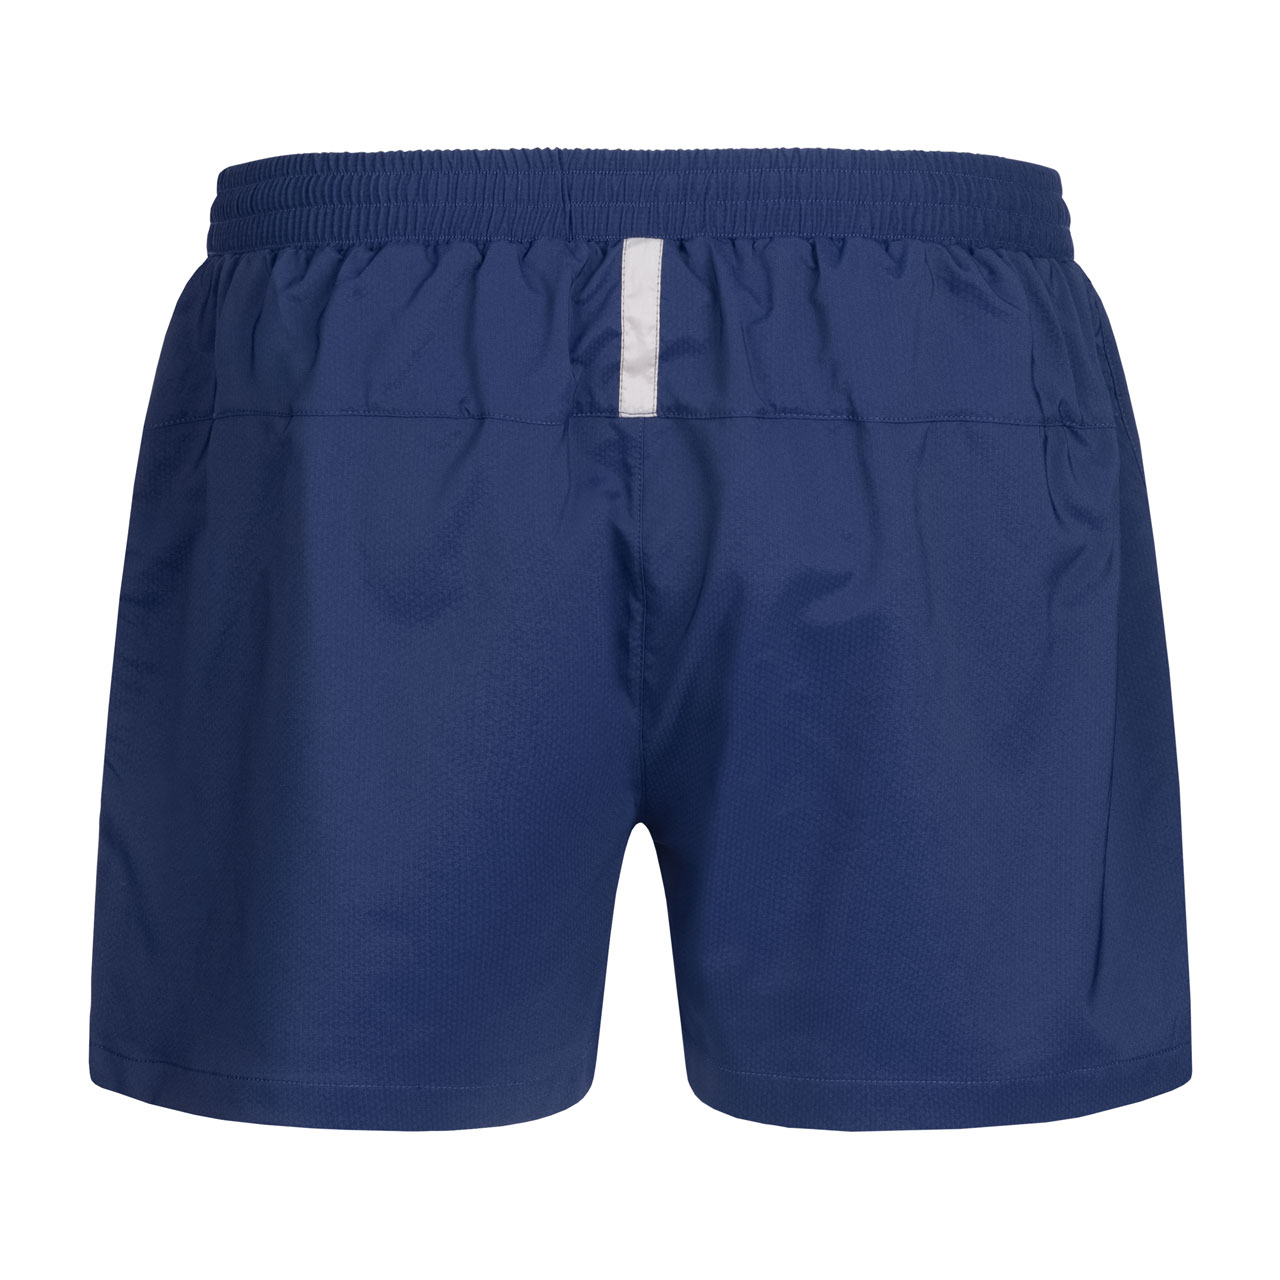 DONIC Tischtennis Shorts Sprint blau hinten